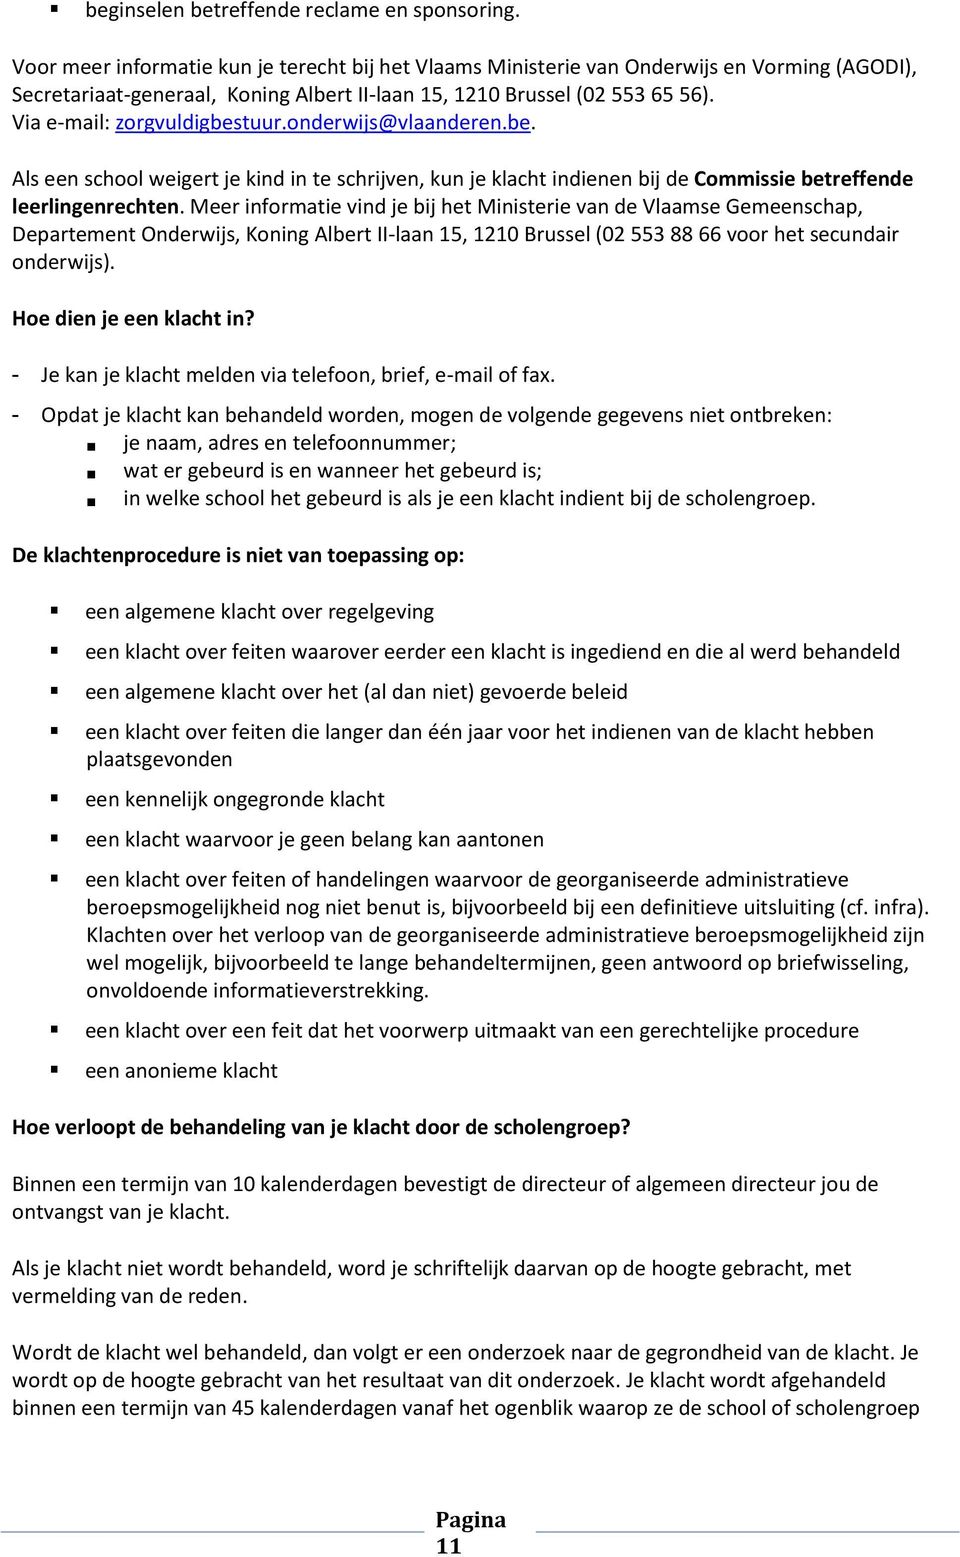 Via e-mail: zorgvuldigbestuur.onderwijs@vlaanderen.be. Als een school weigert je kind in te schrijven, kun je klacht indienen bij de Commissie betreffende leerlingenrechten.